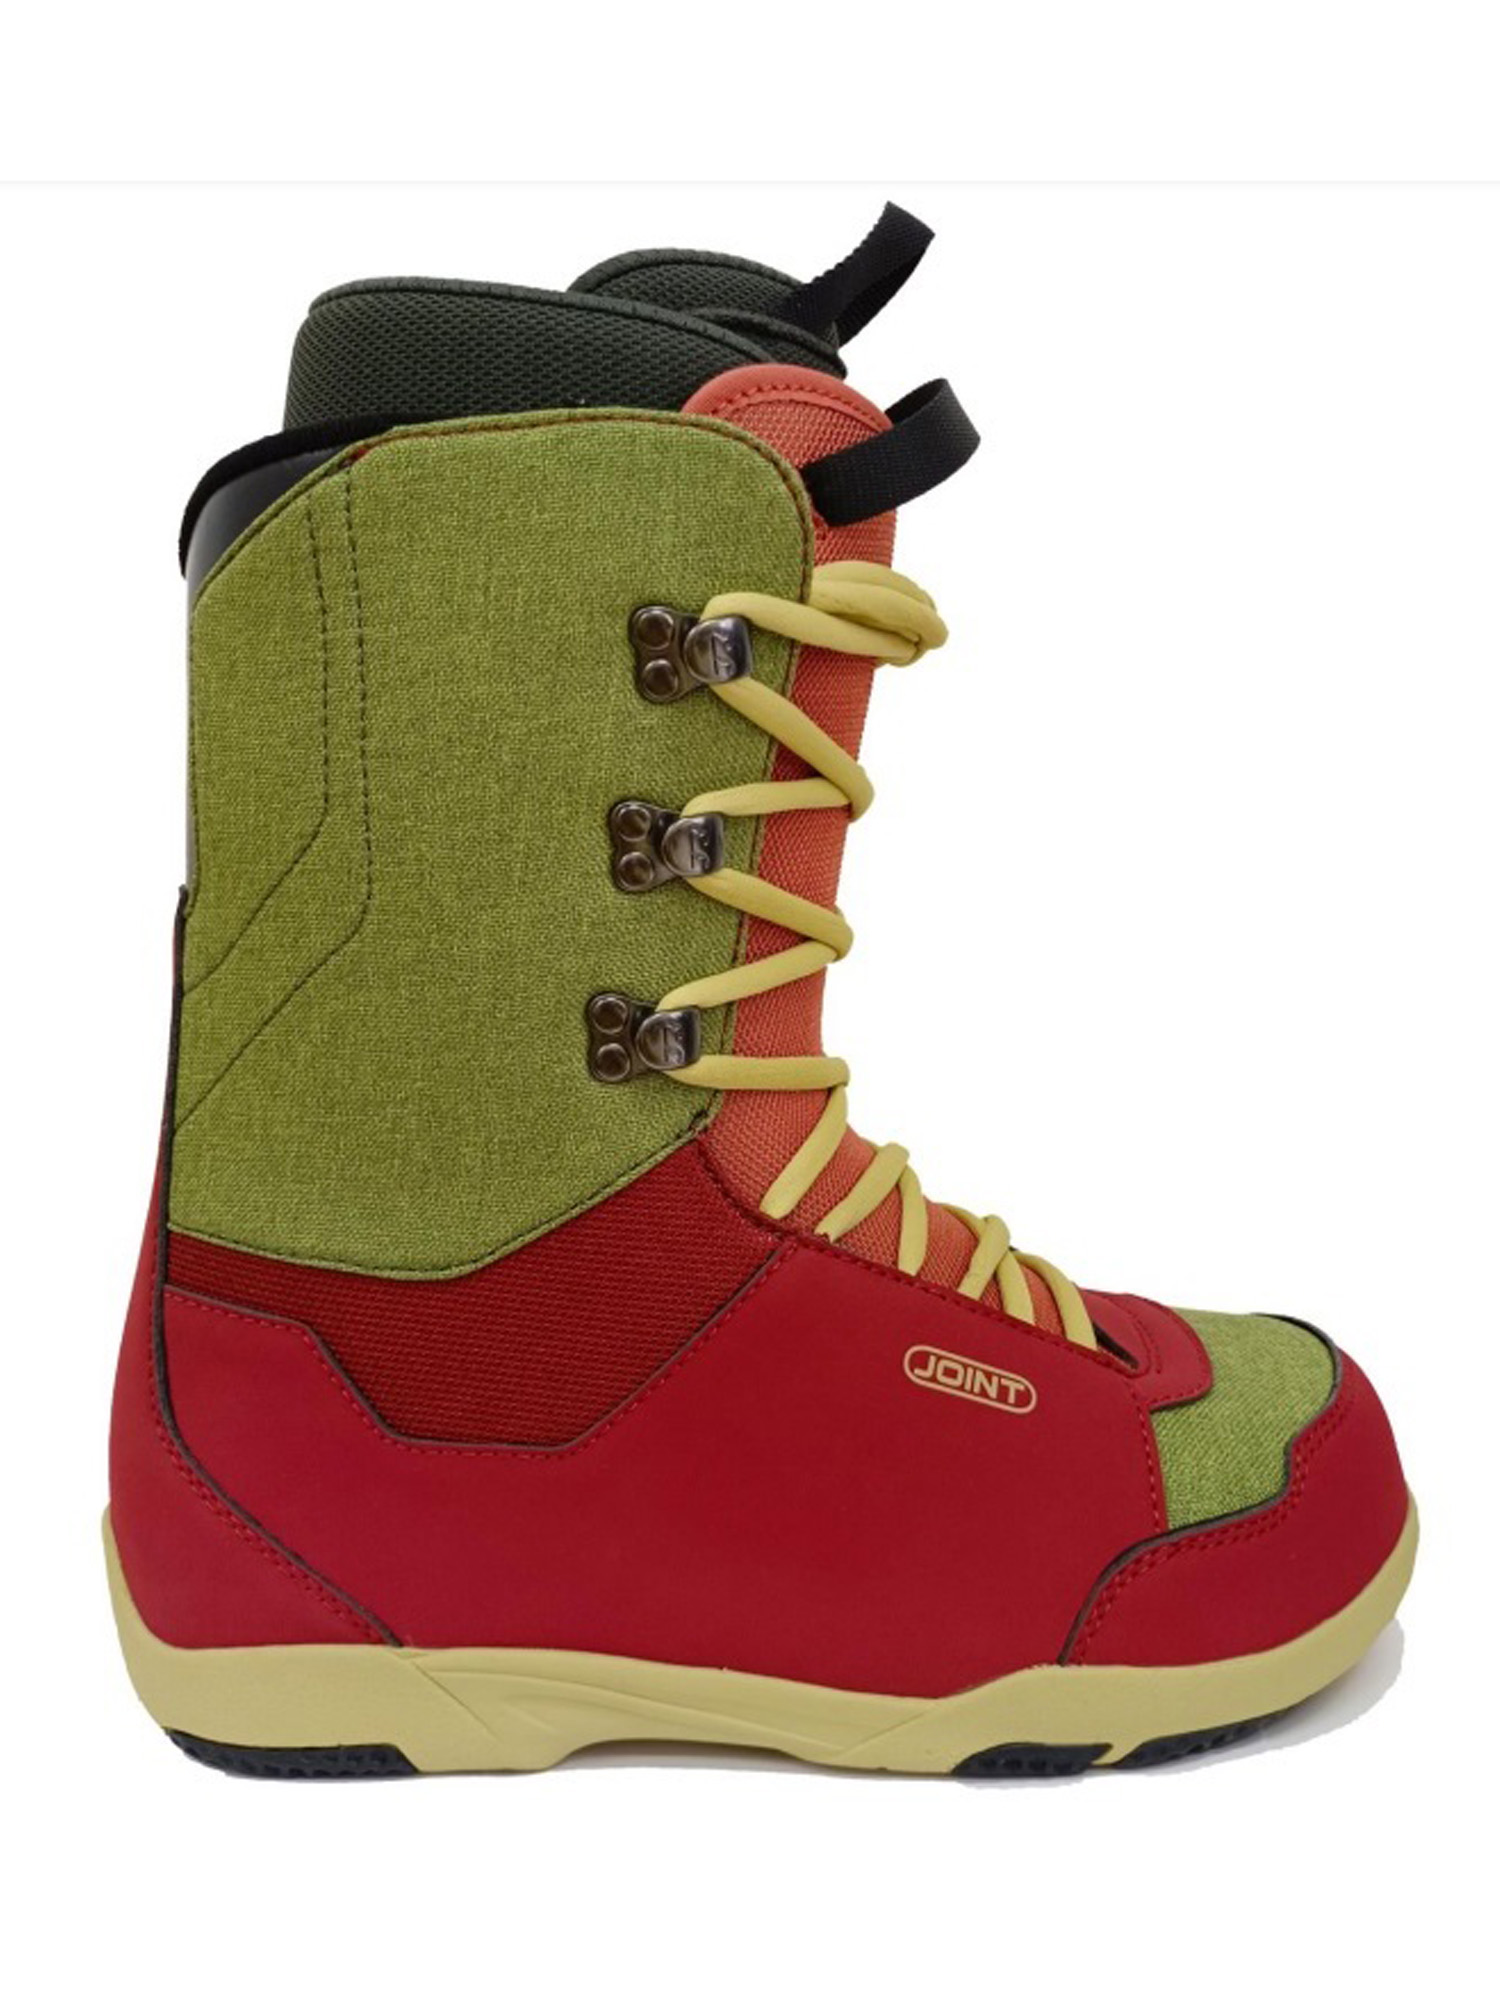 Ботинки для сноуборда Joint  Dovetail 2023 dark red/light brown 26,5 см